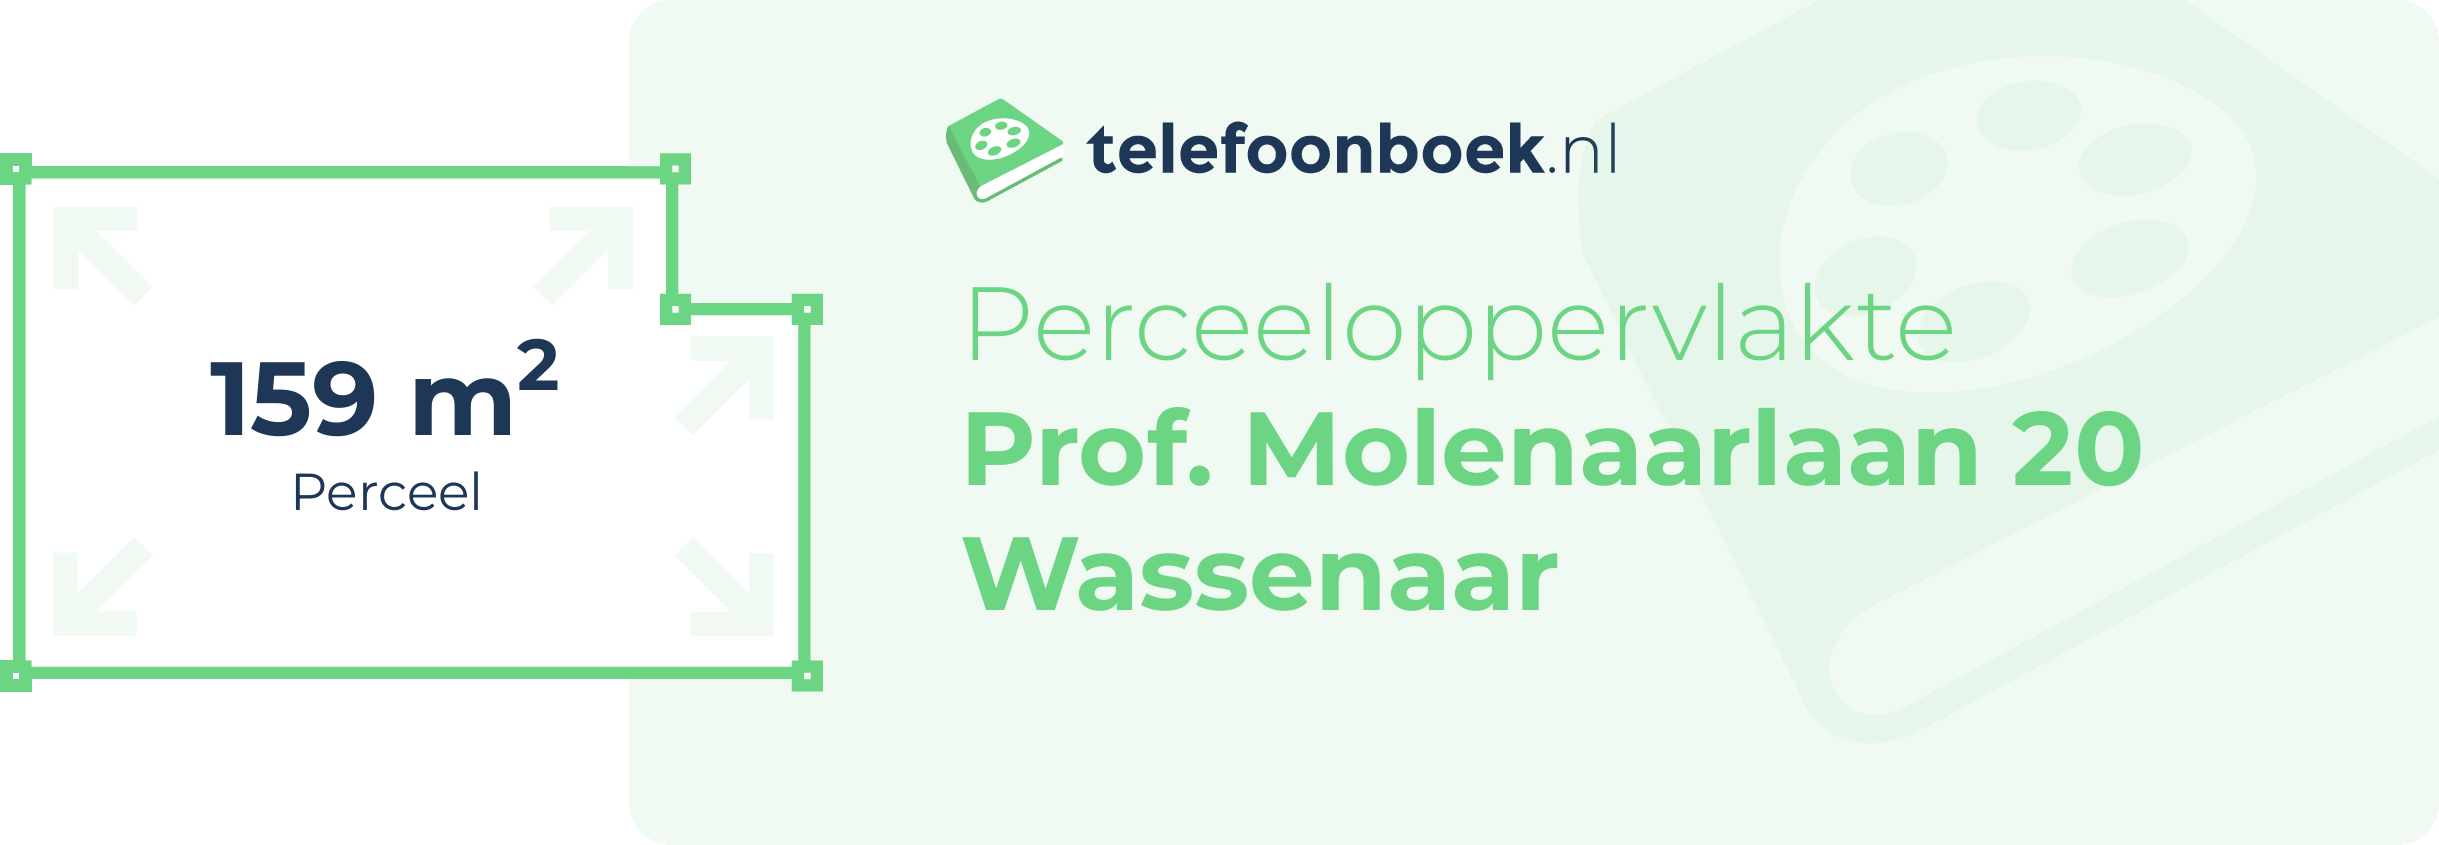 Perceeloppervlakte Prof. Molenaarlaan 20 Wassenaar